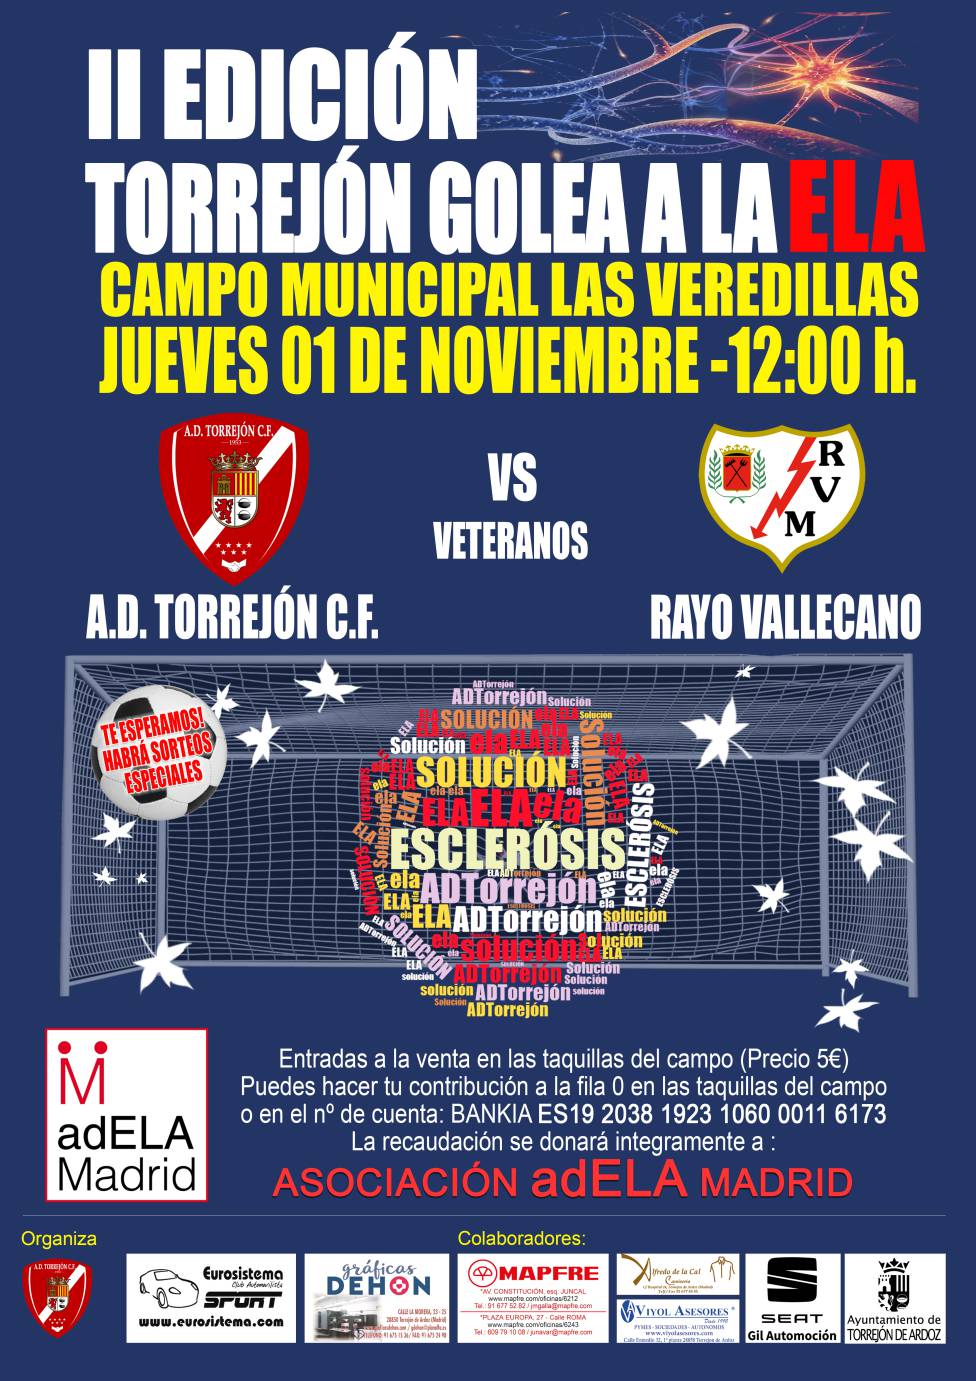 Cartel promocional del segundo partido benÃ©fico TorrejÃ³n golea a la ELA, que se disputarÃ¡ en Las Veredillas el jueves 1 de noviembre a las 12:00 entre veteranos de la A.D. TorrejÃ³n y del Rayo Vallecano.